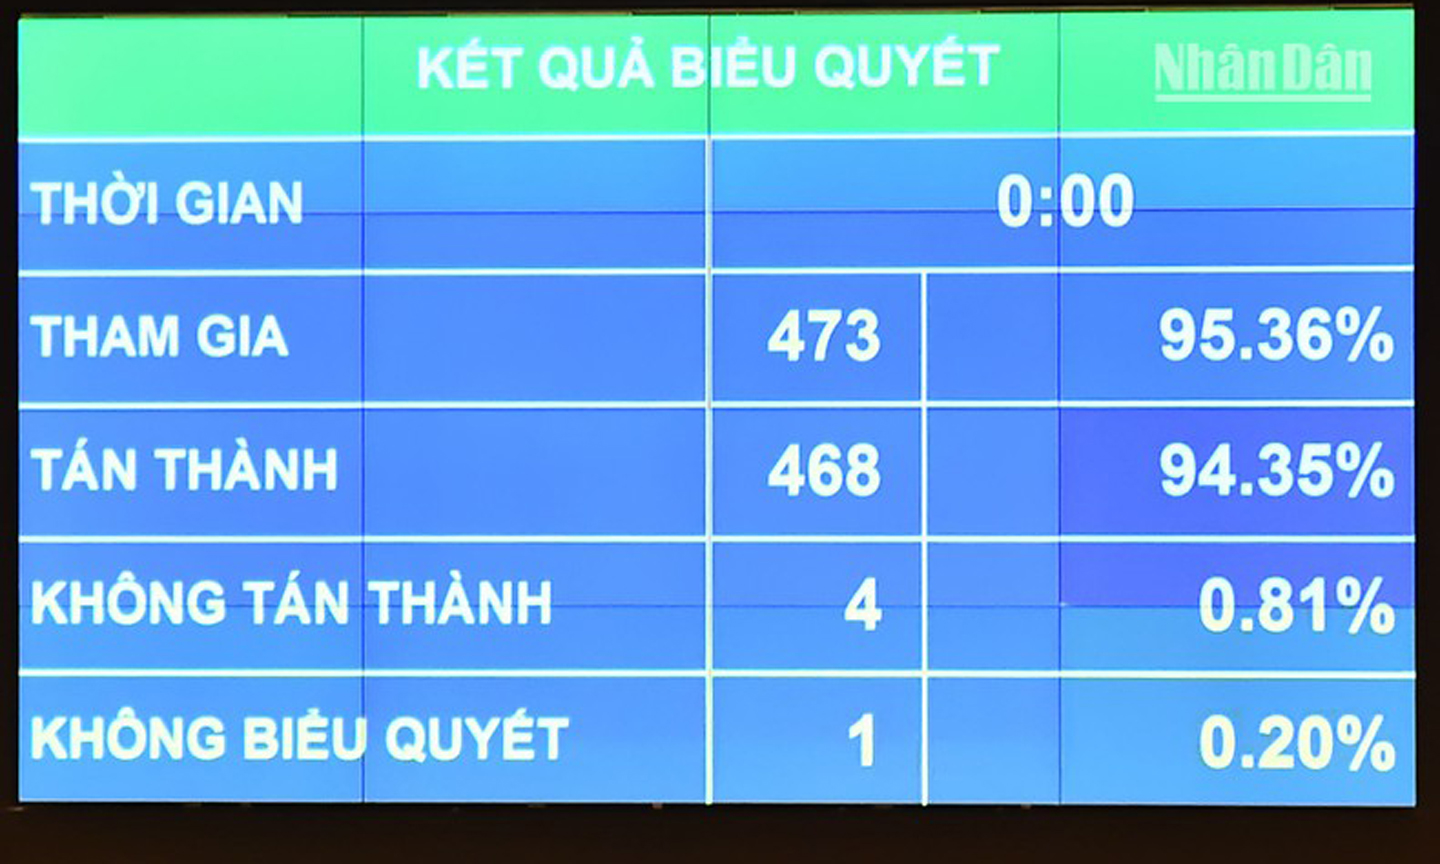 Với tỷ lệ tán thành cao, Quốc hội đã biểu quyết thông qua Nghị quyết, với 468/473 các đại biểu Quốc hội có mặt đã biểu quyết tán thành, chiếm 94,35% tổng số đại biểu Quốc hội. (Ảnh: THỦY NGUYÊN)